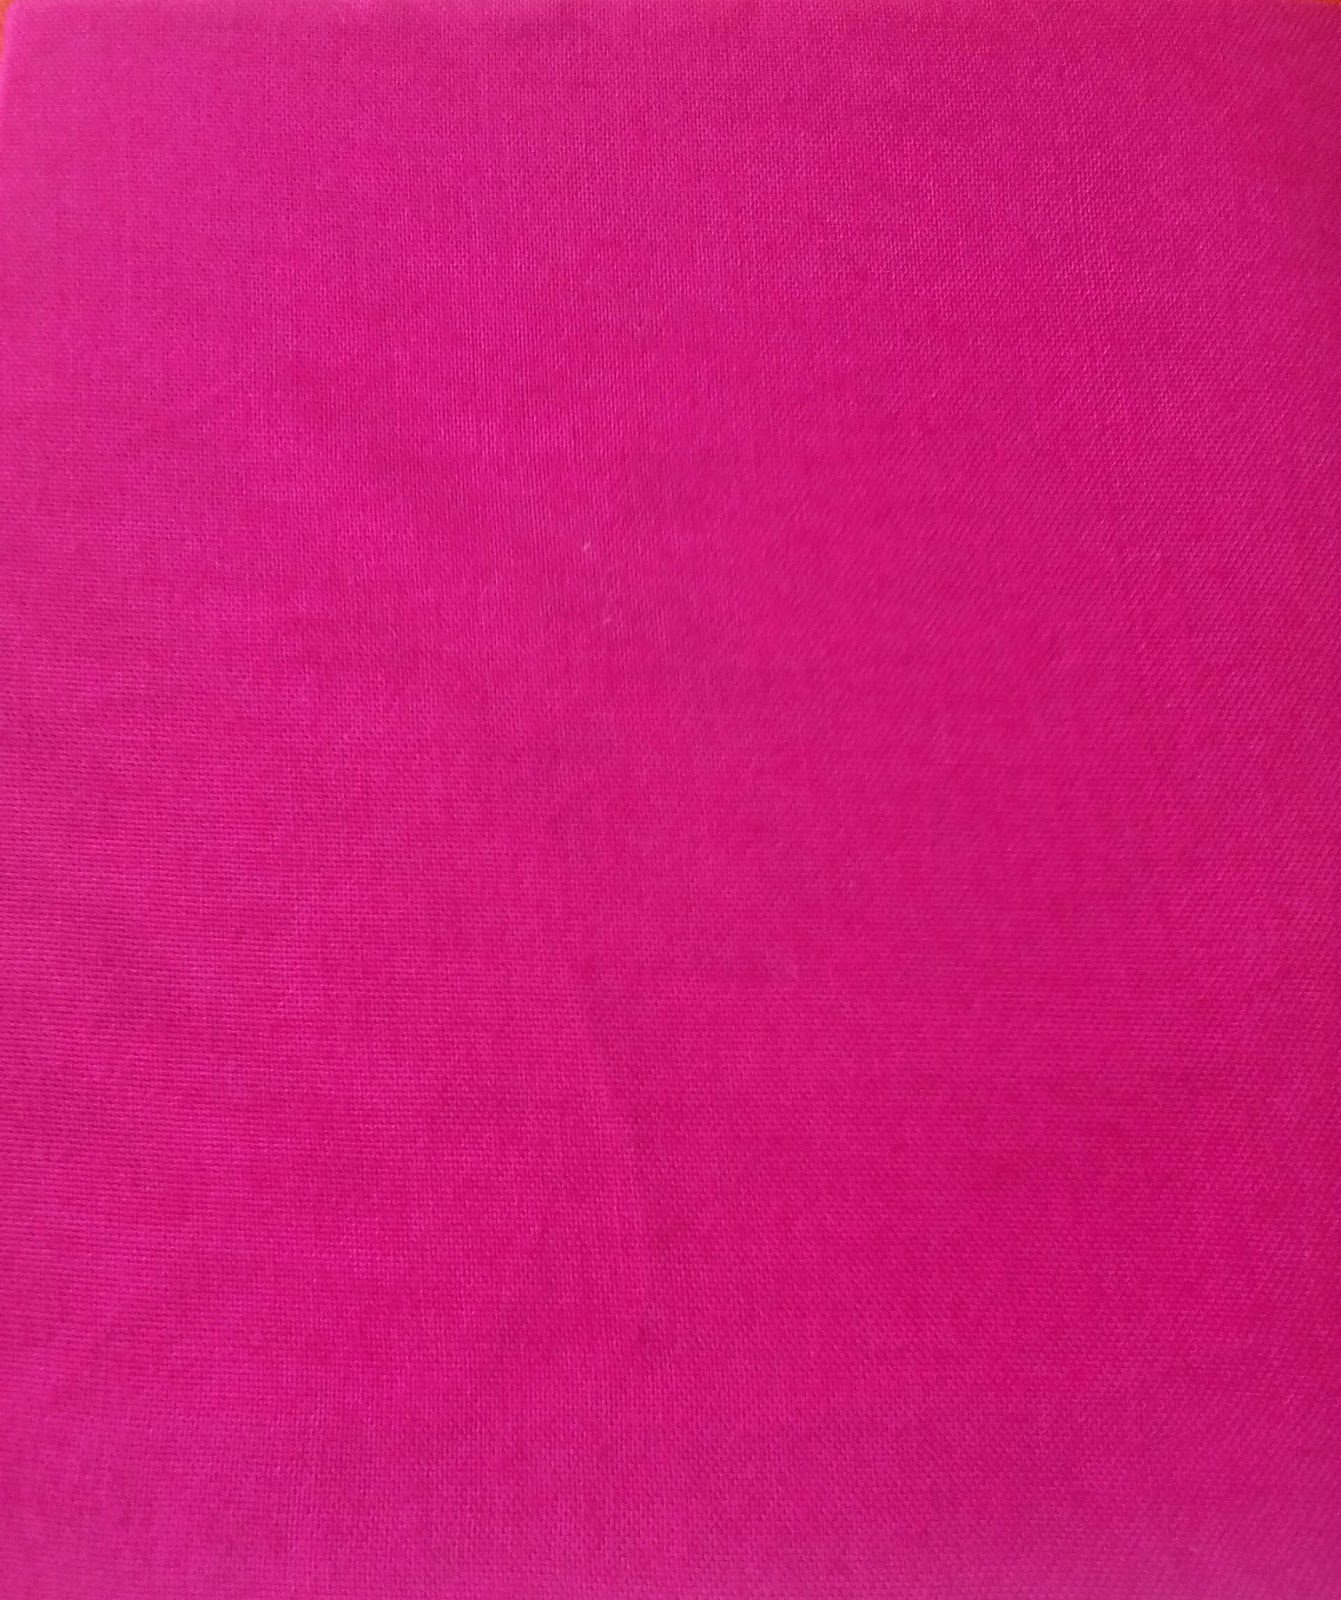 Buat Warna Pink Batik